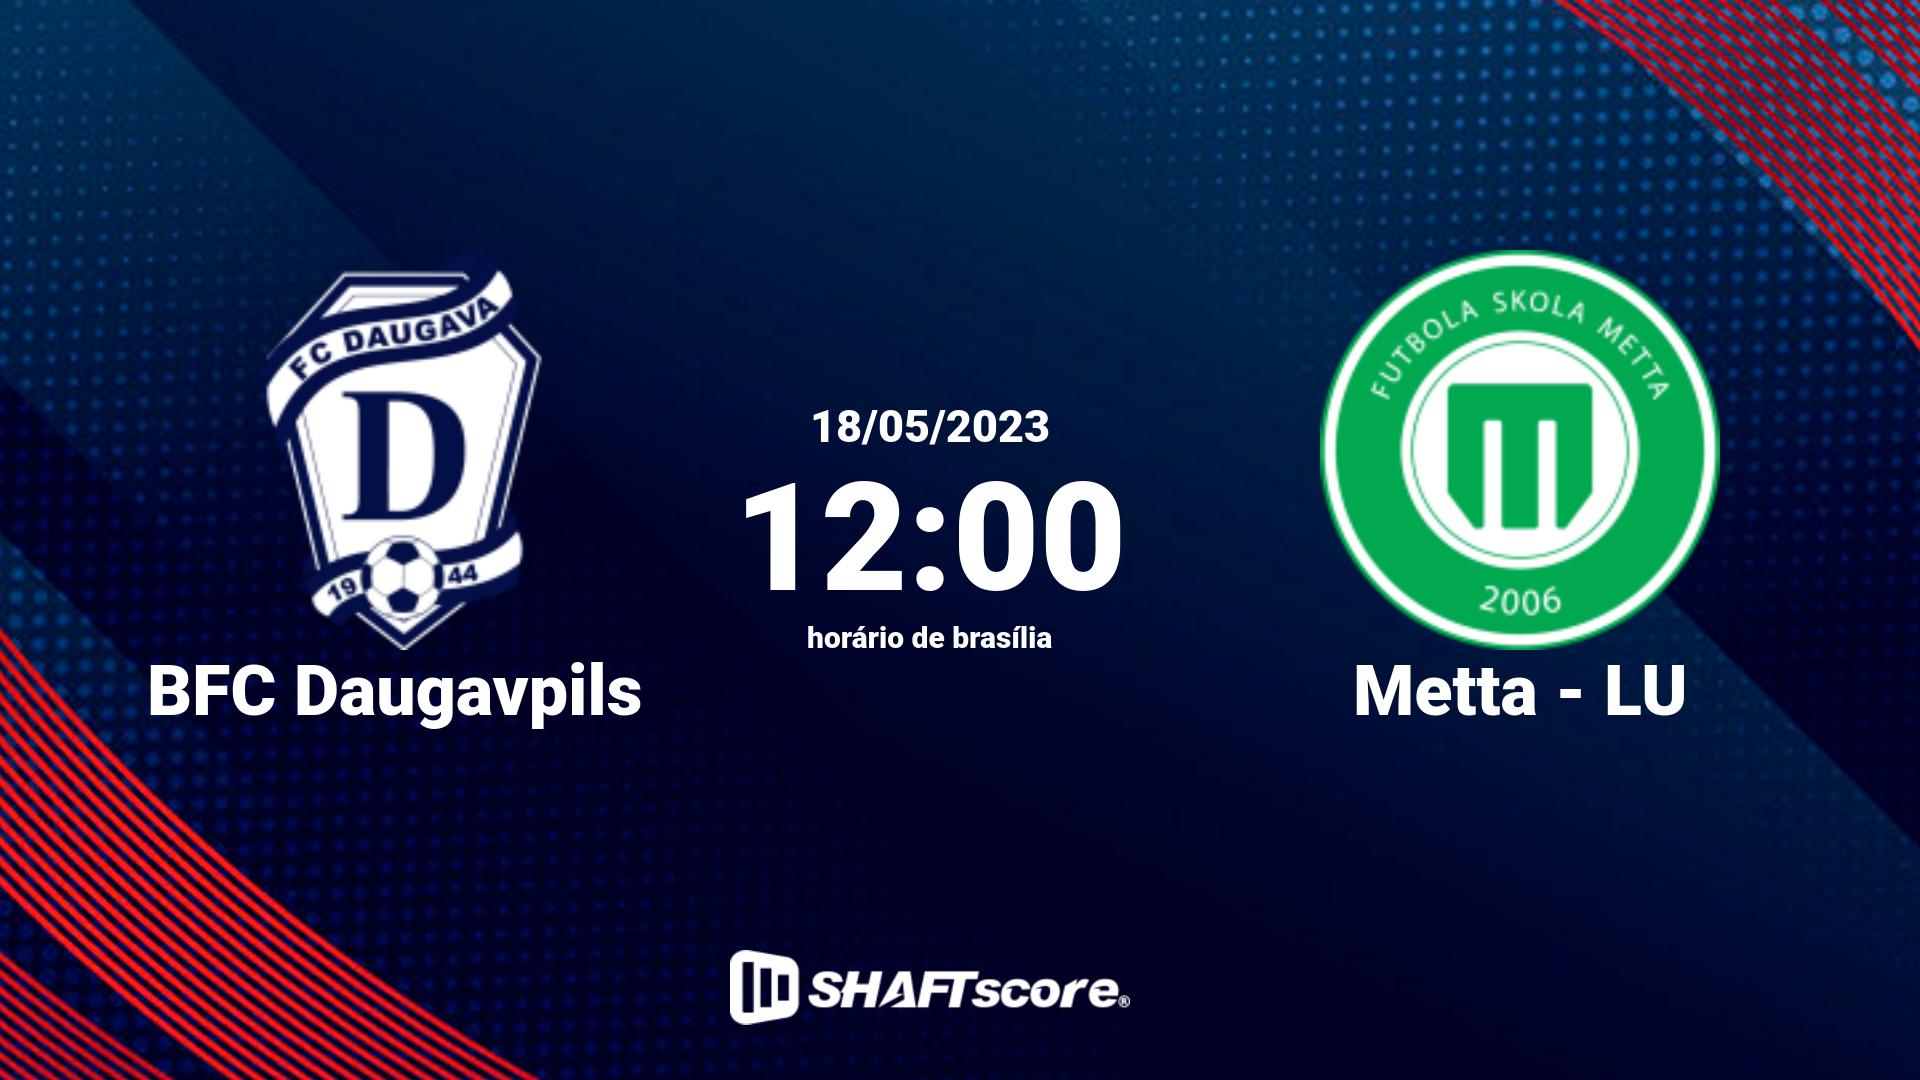 Estatísticas do jogo BFC Daugavpils vs Metta - LU 18.05 12:00